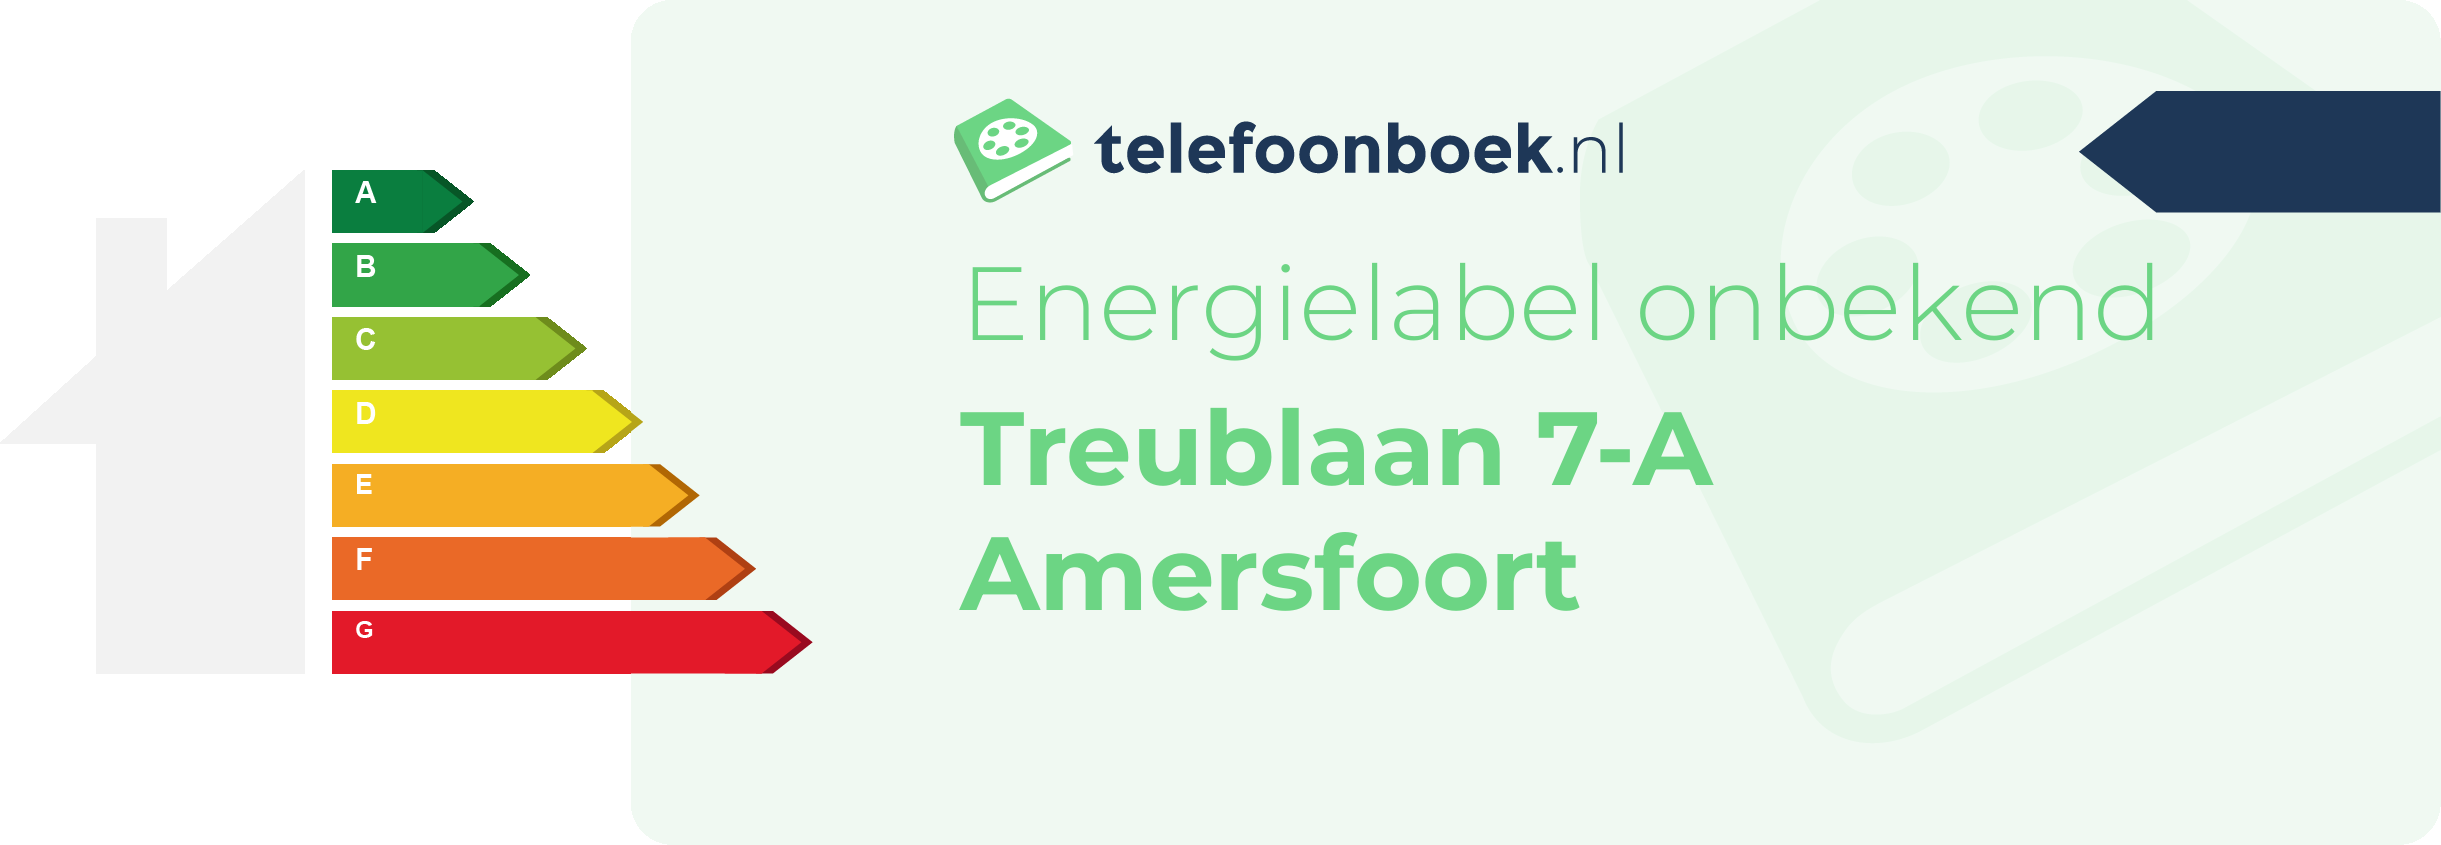 Energielabel Treublaan 7-A Amersfoort